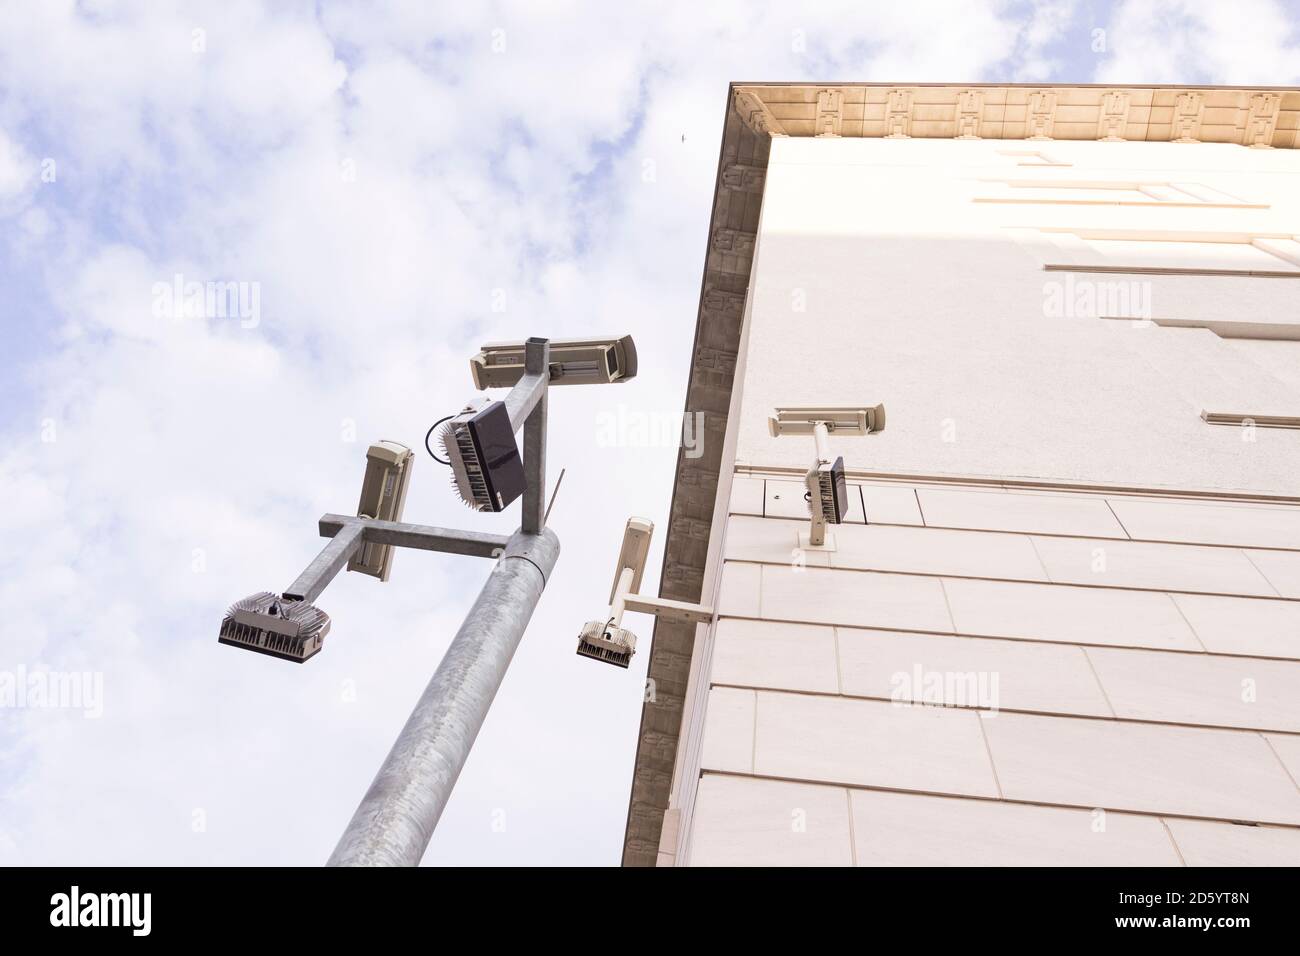 Germania, Berlino, BND nuovo edificio del tedesco agenzia di intelligence, telecamere di sorveglianza Foto Stock